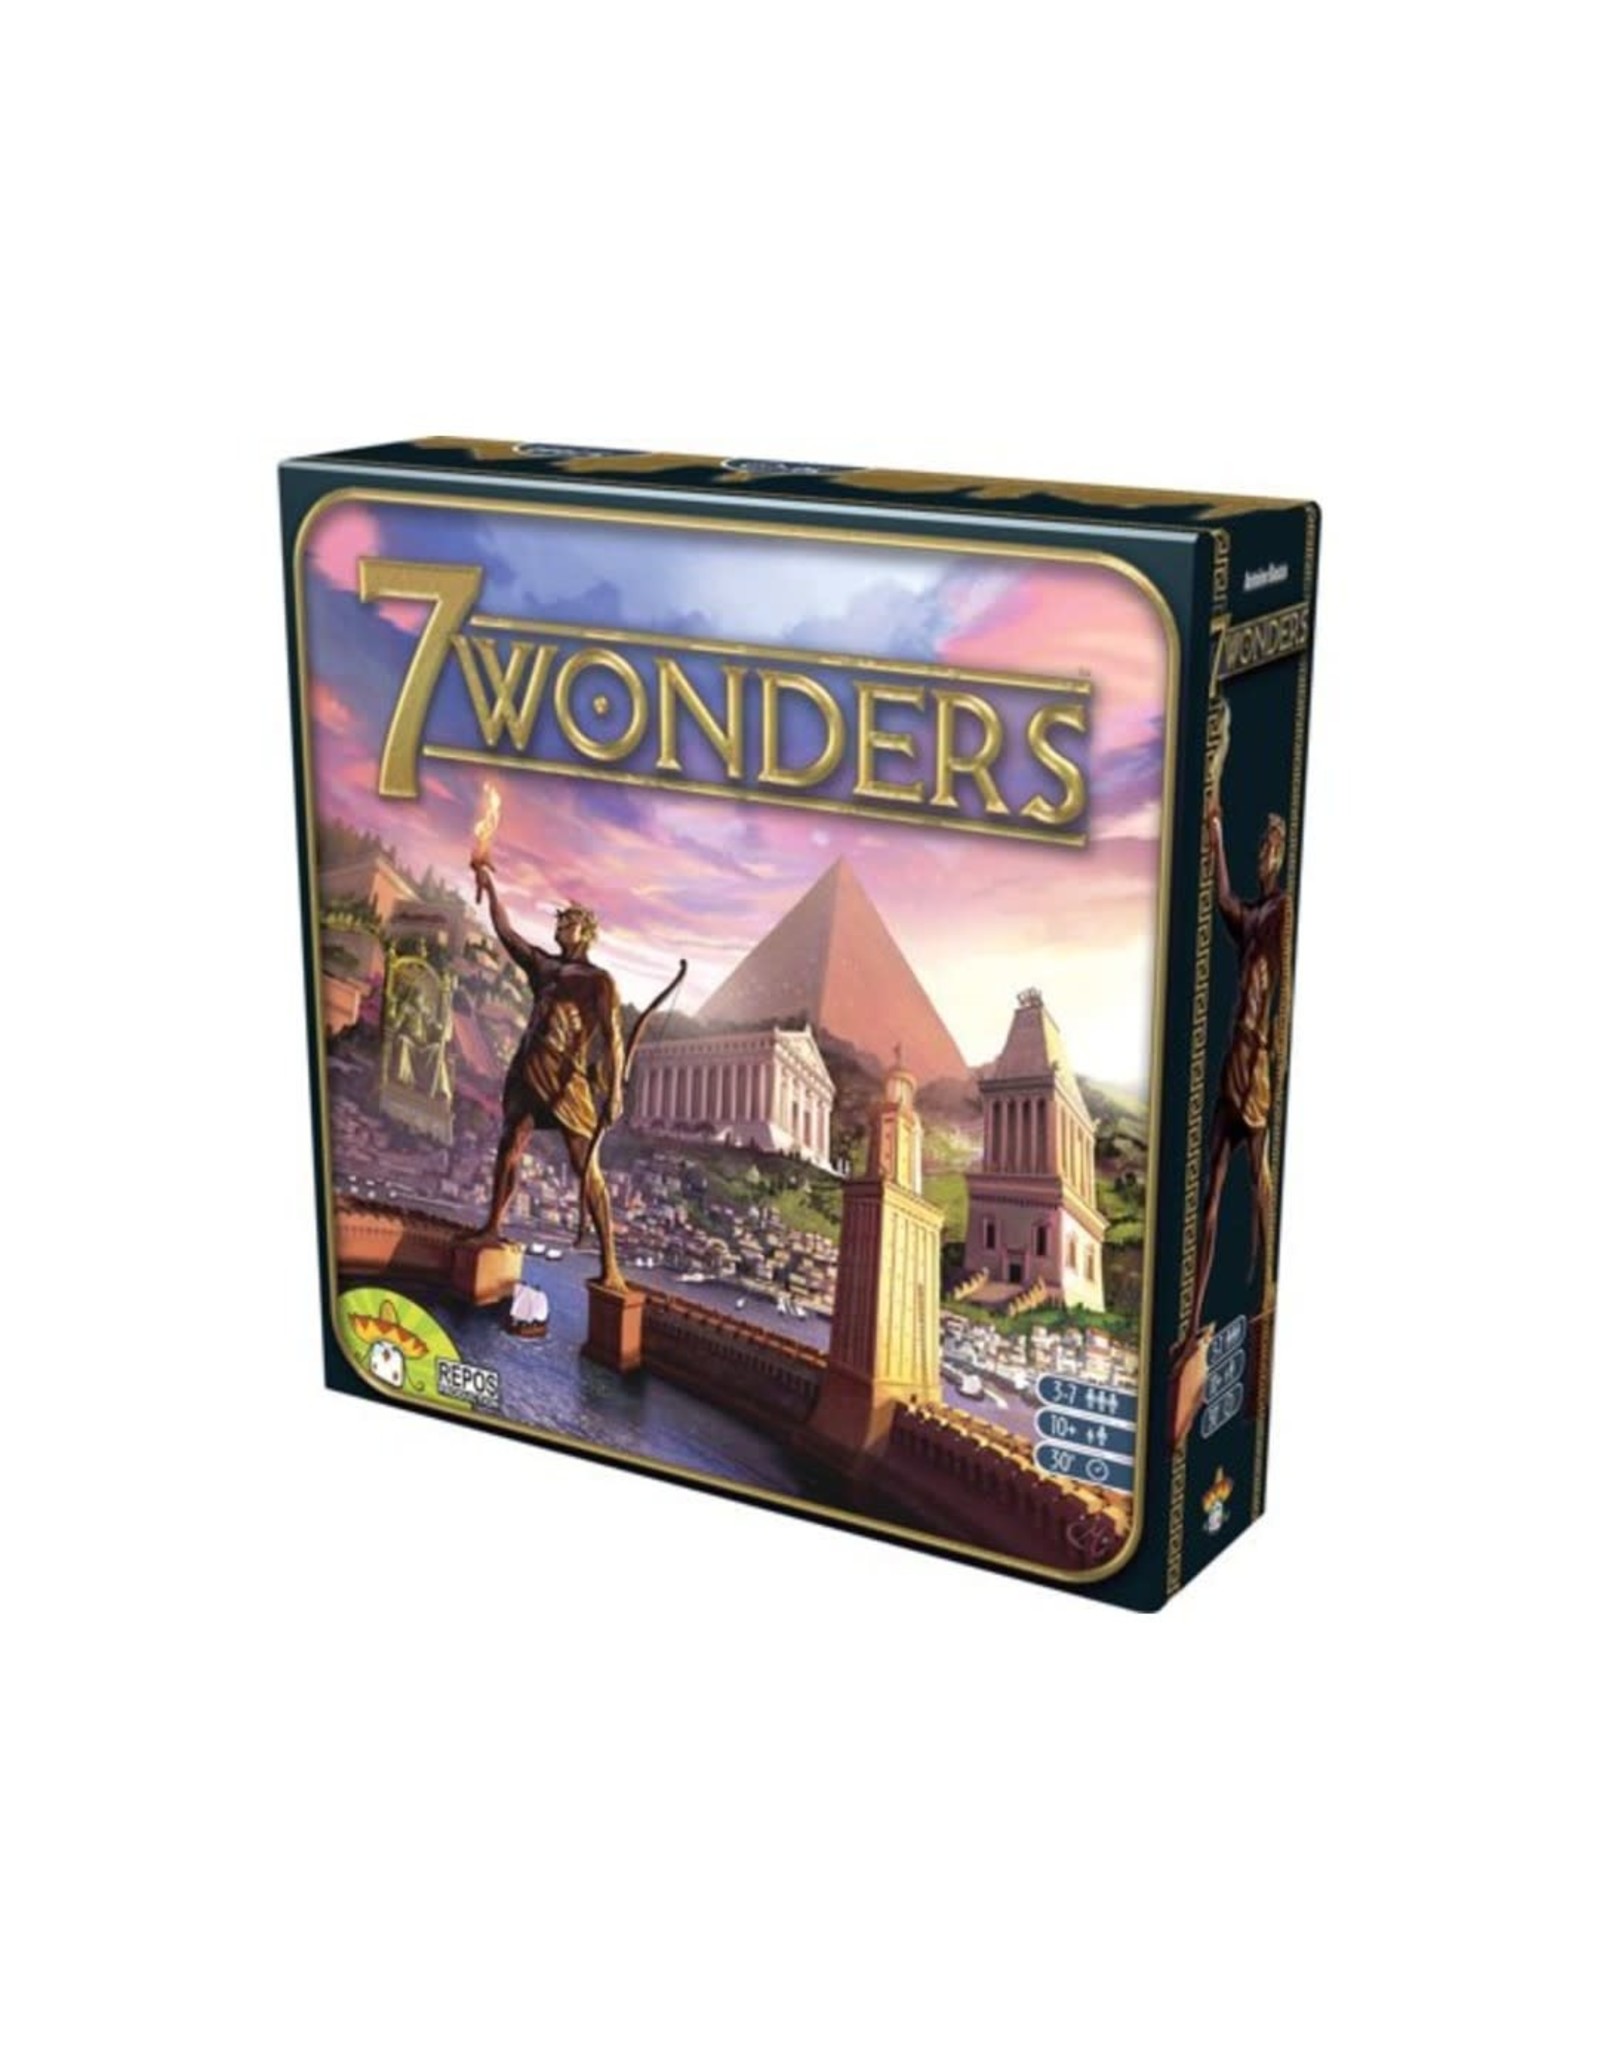 Asmodee 7 Wonders